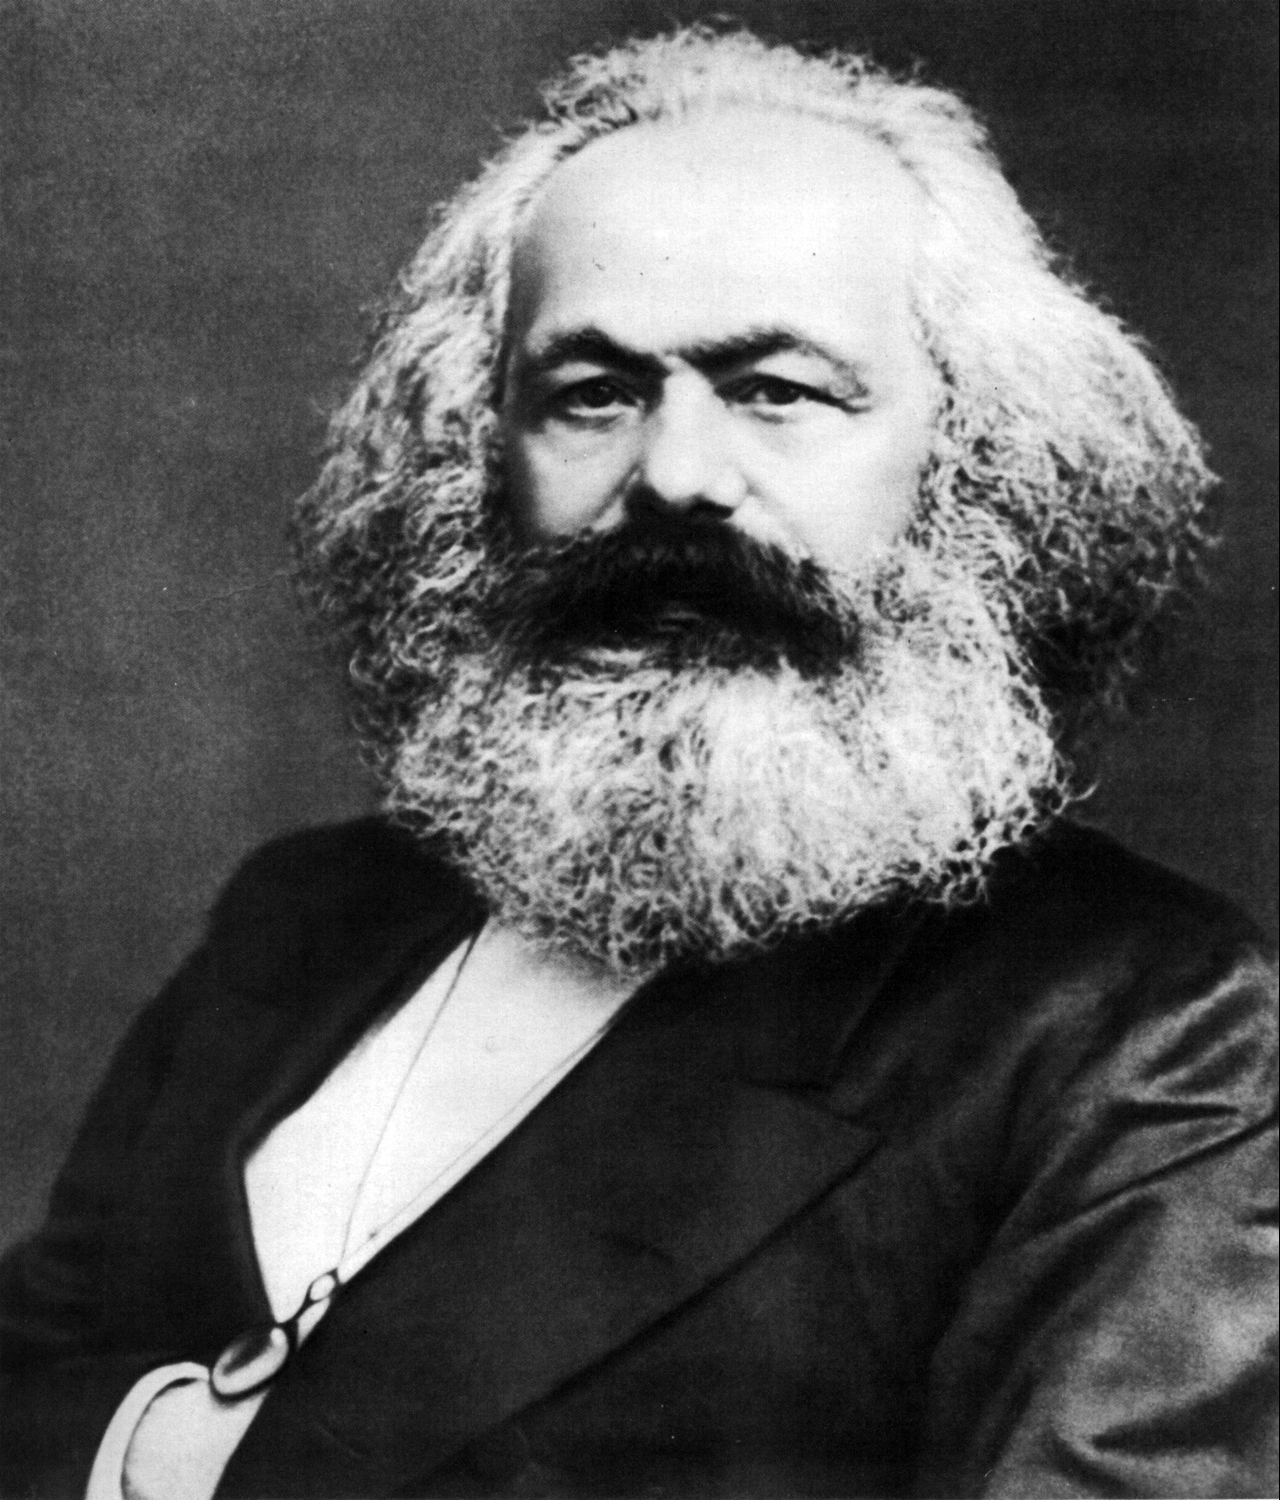 Karl Marx 10 Image public domain